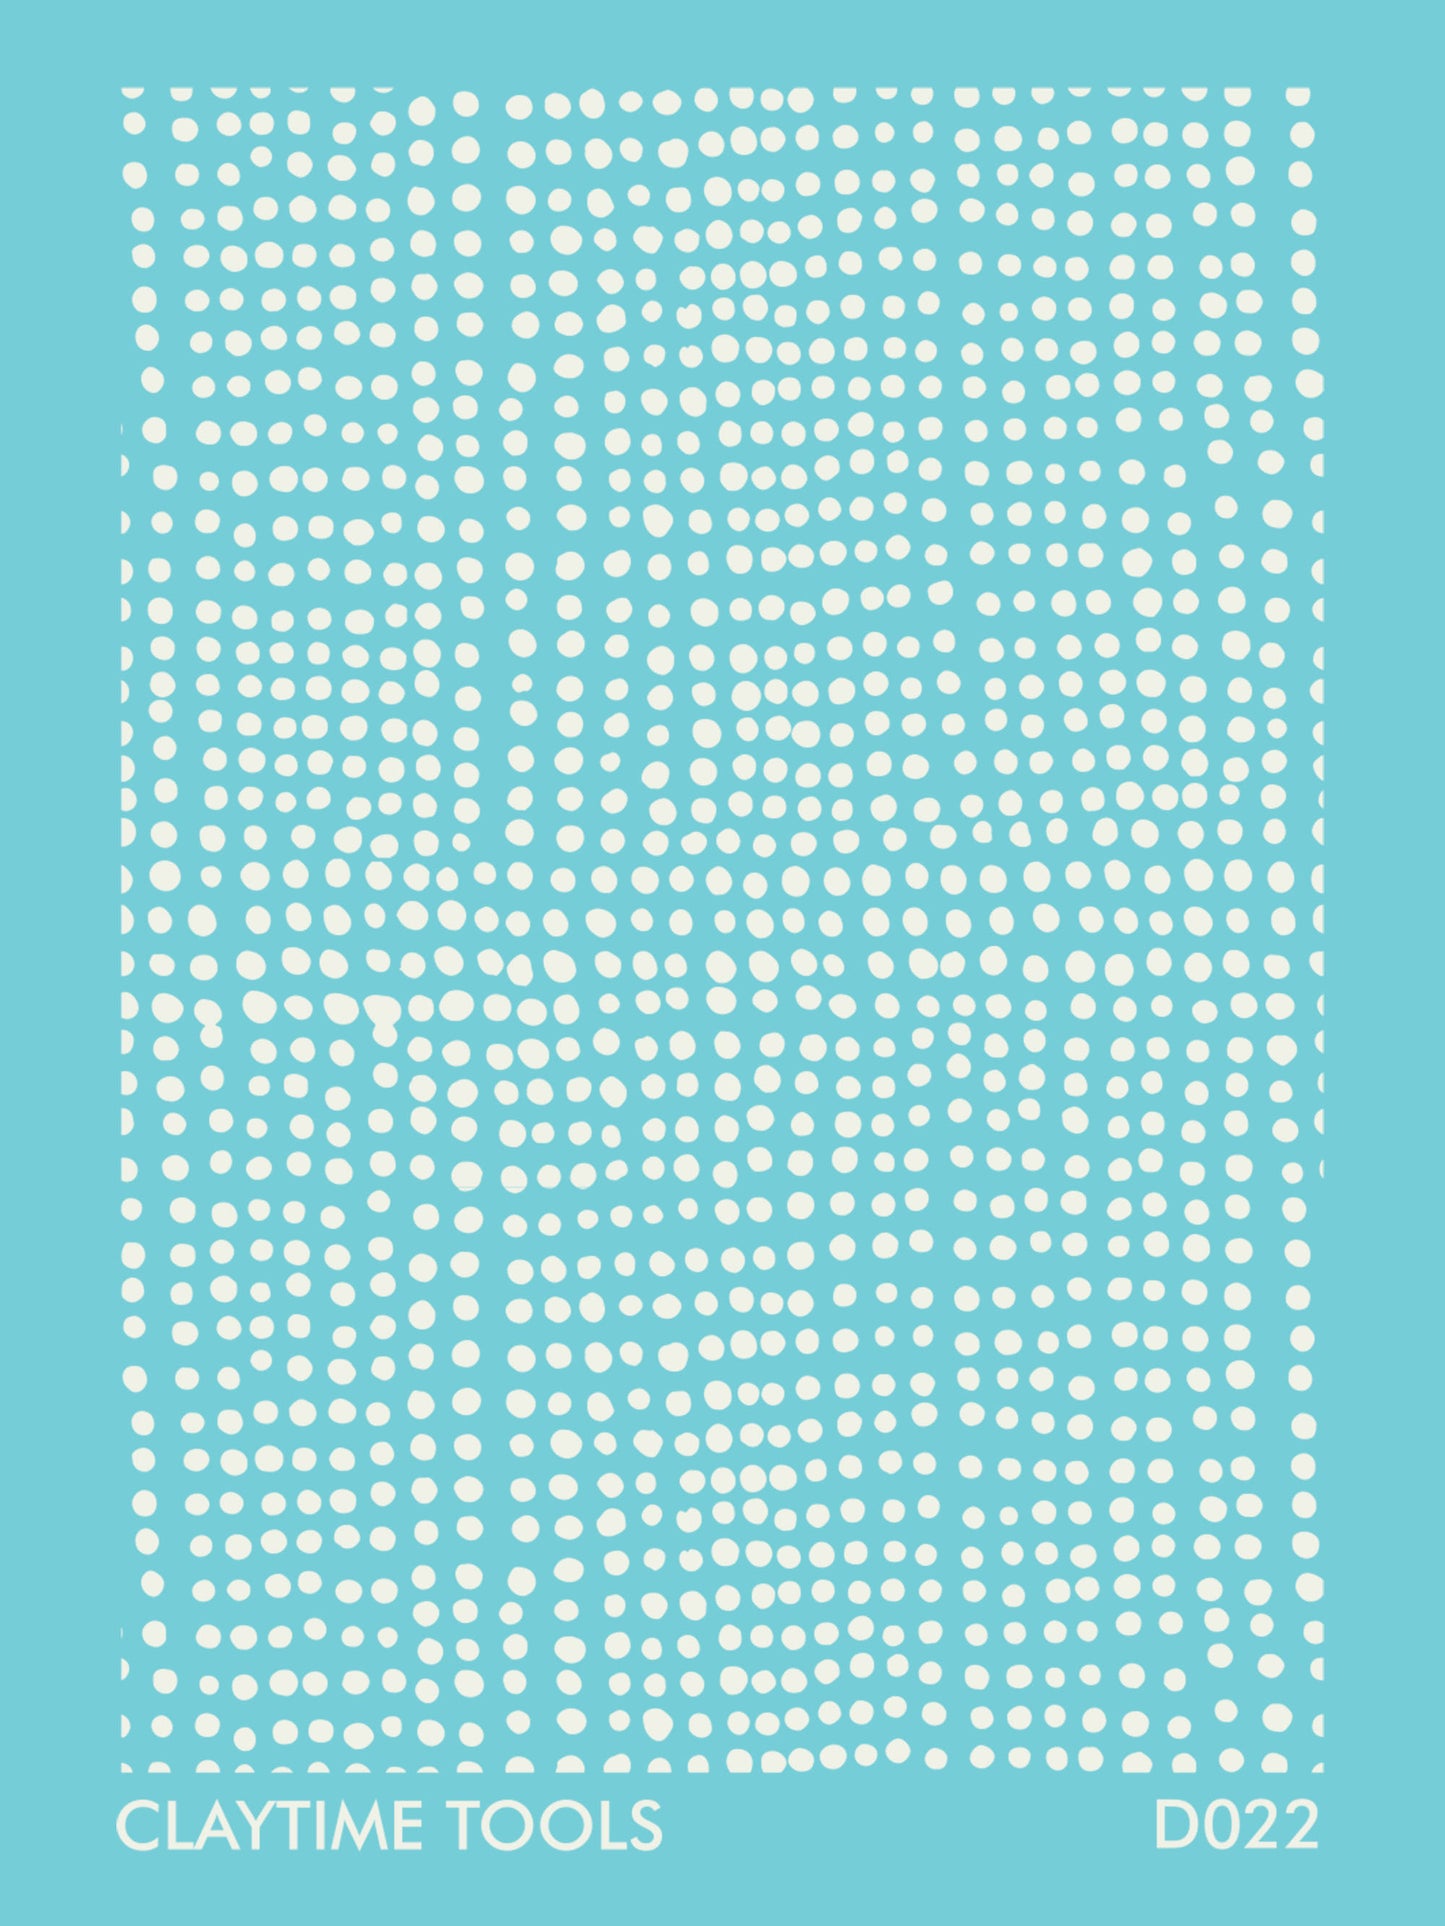 SIlkscreen with dots pattern